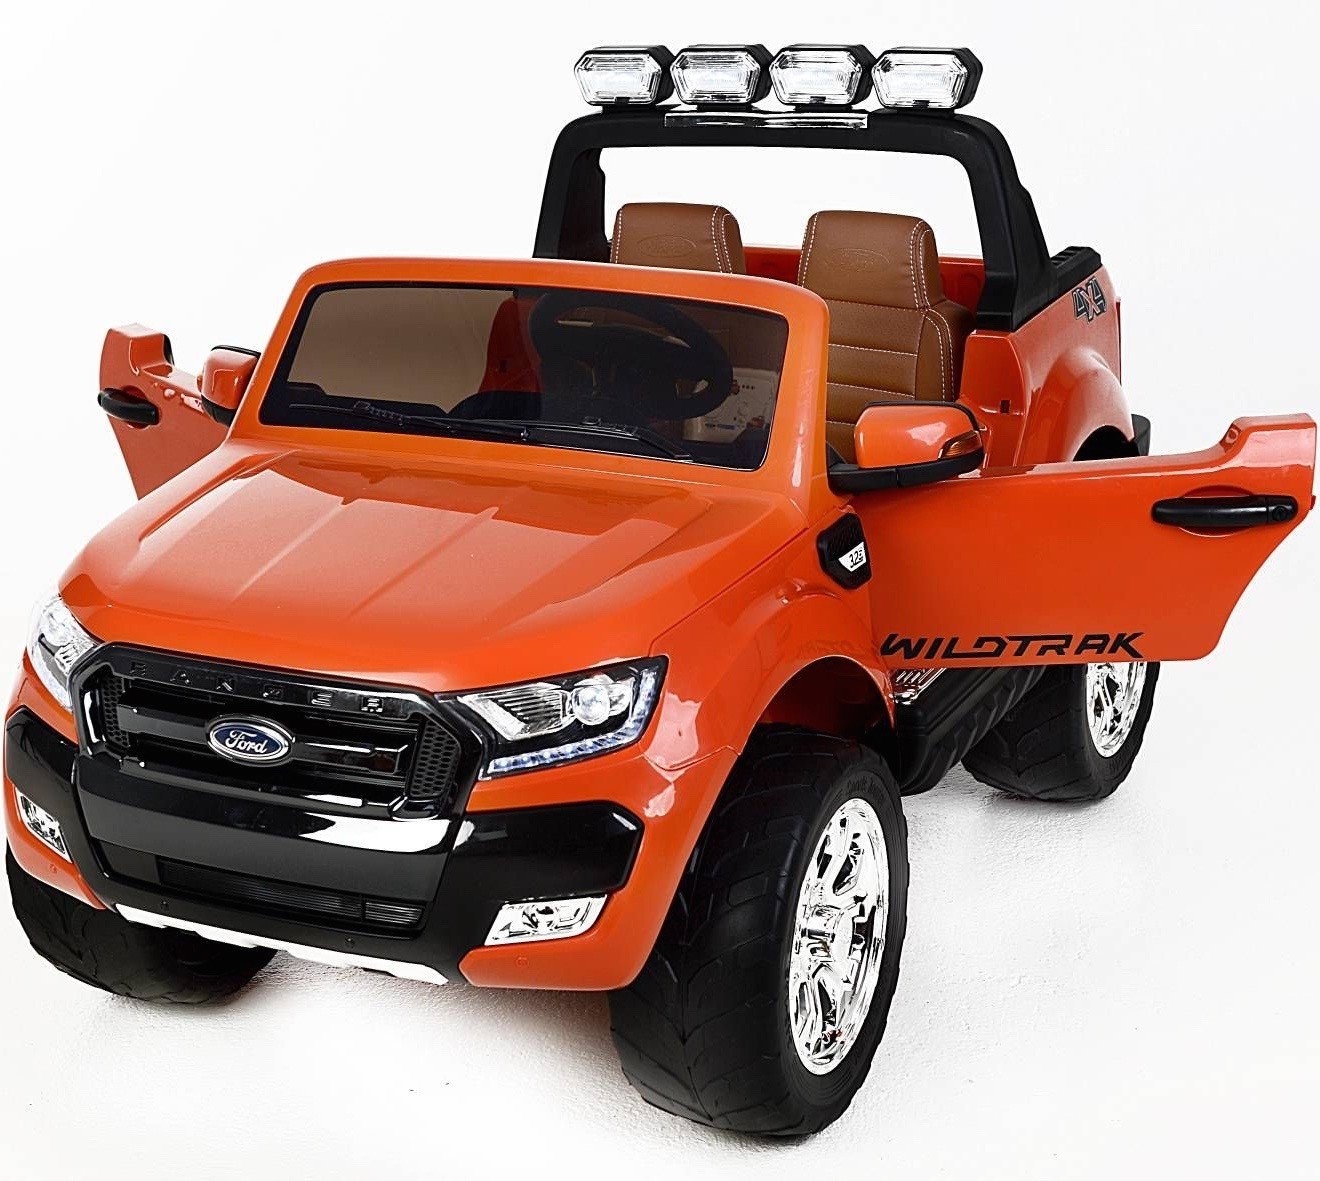 Ford Ranger Wildtrak 2018 Licensed 4WD 24V Battery Ride On Jeep – Orange